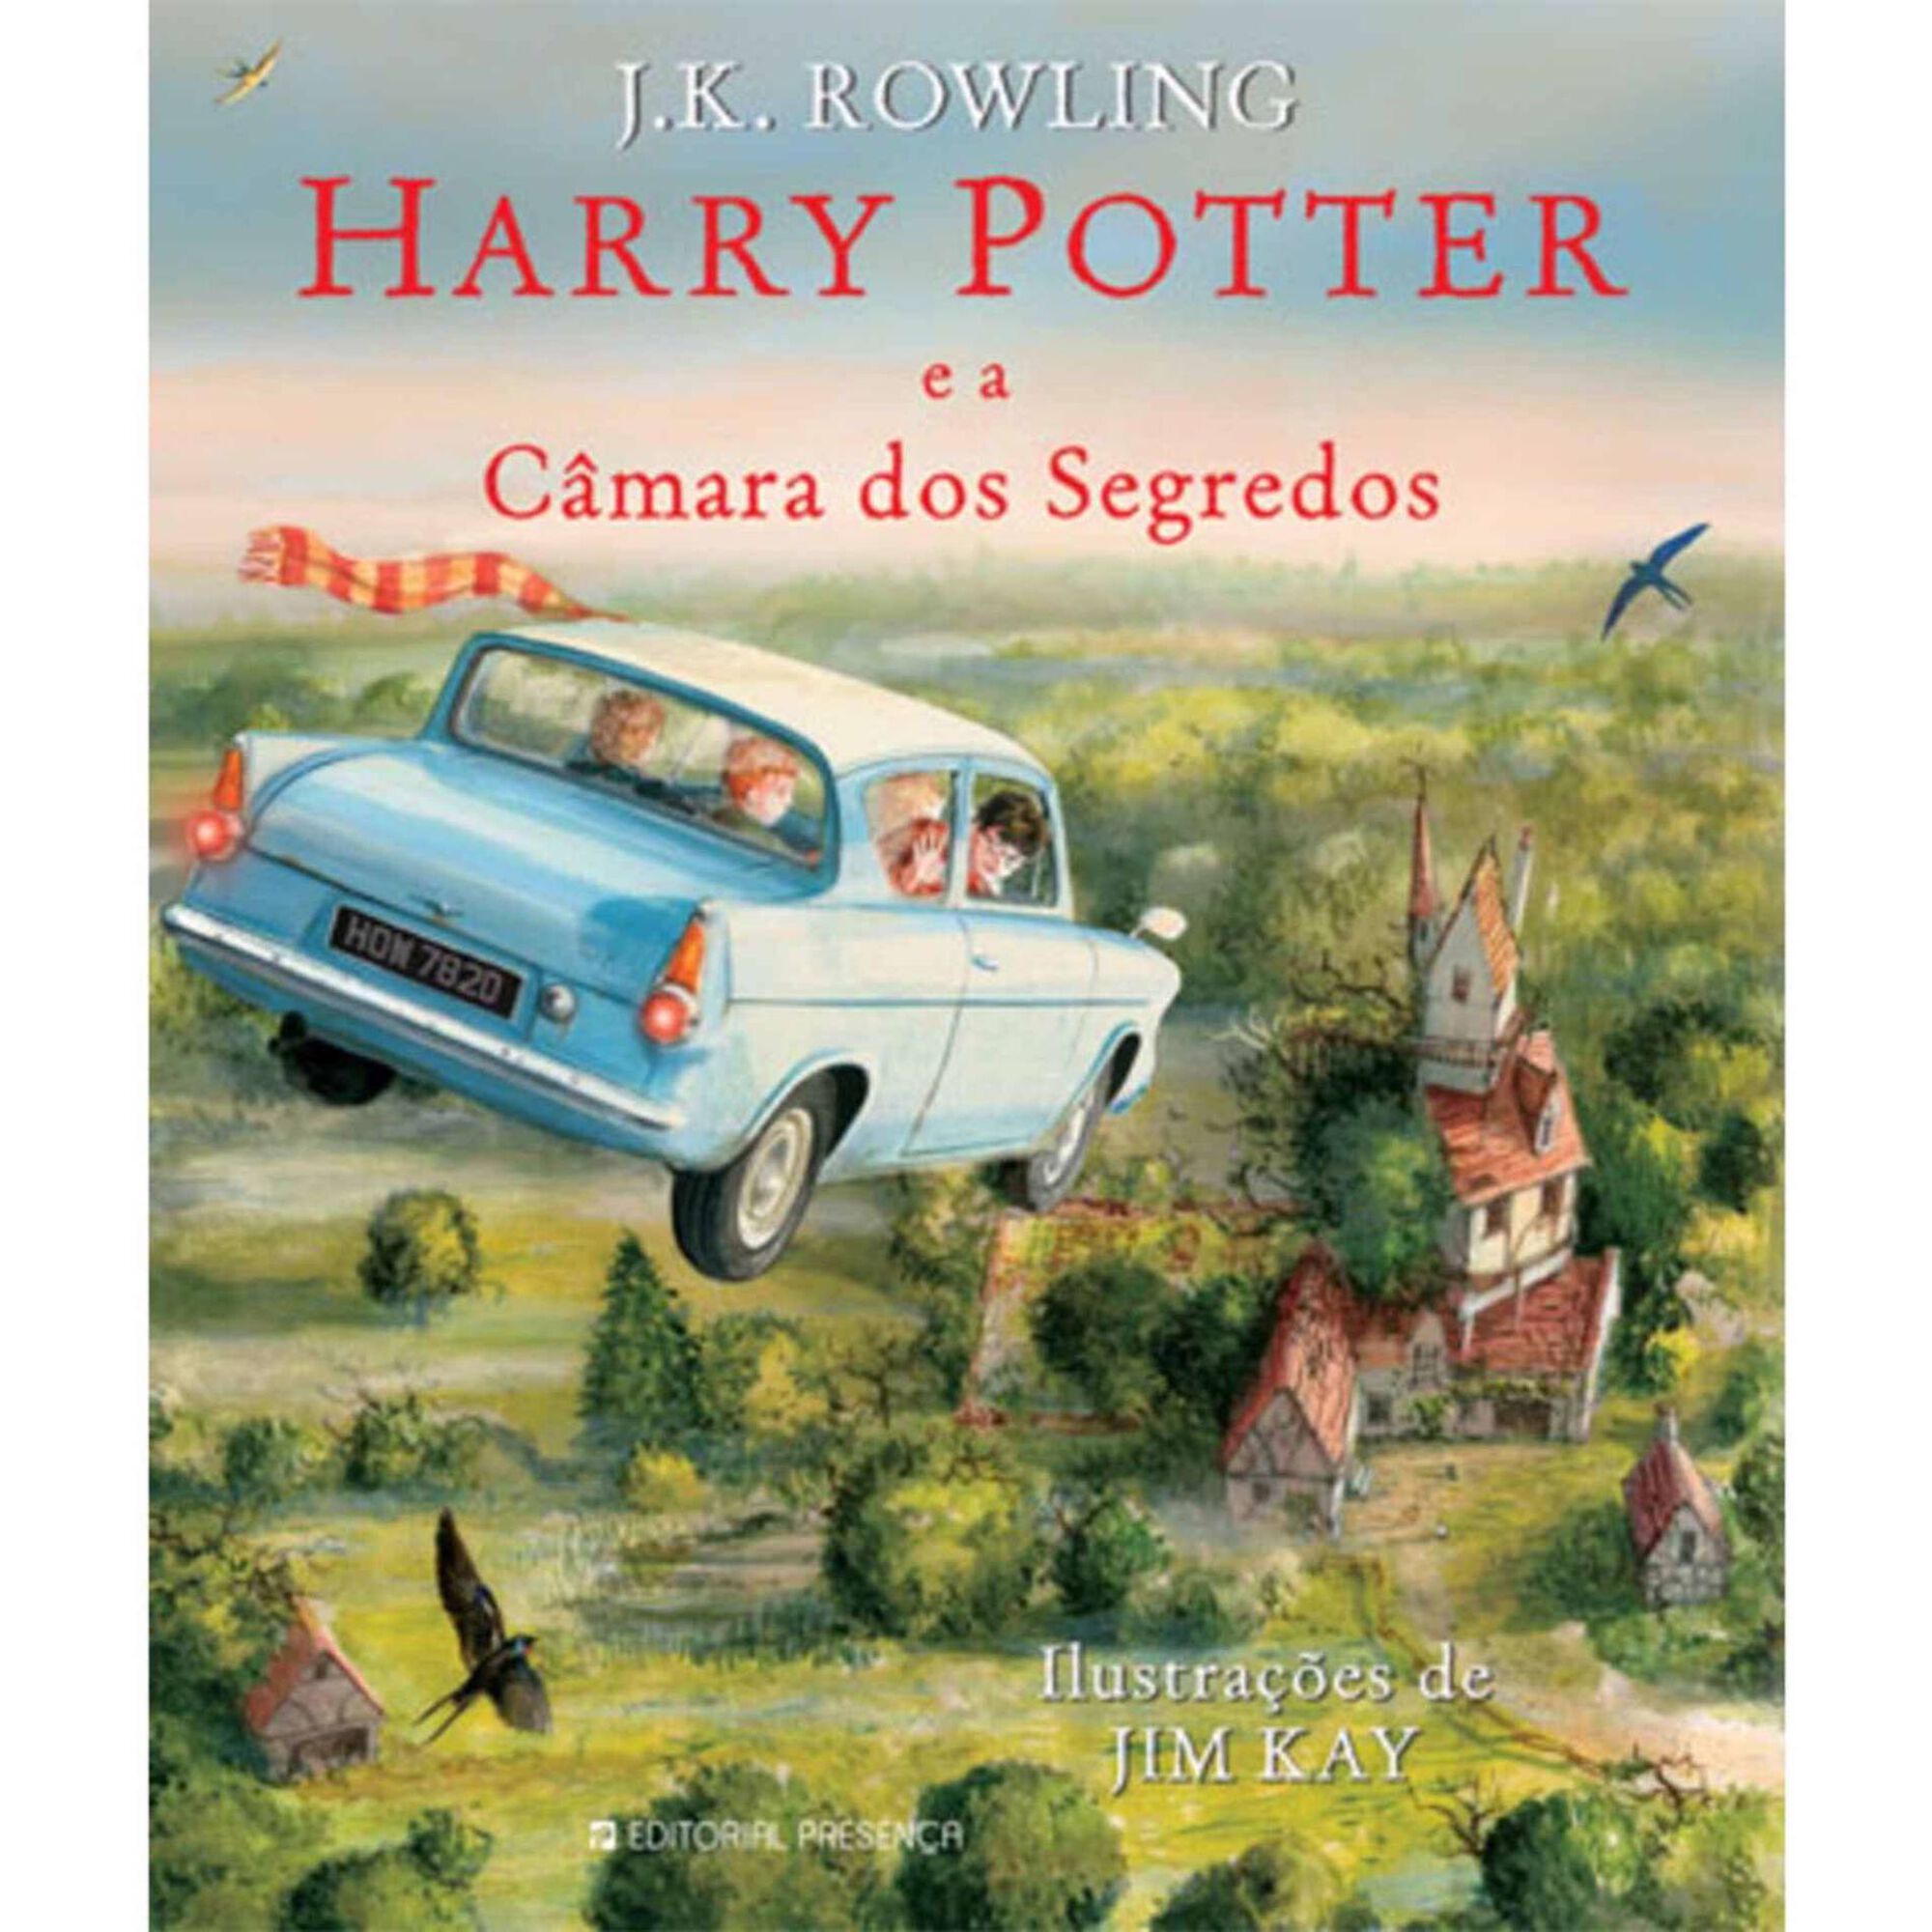 Harry Potter e a Câmara dos Segredos - Edição Ilustrada (Livro 2)